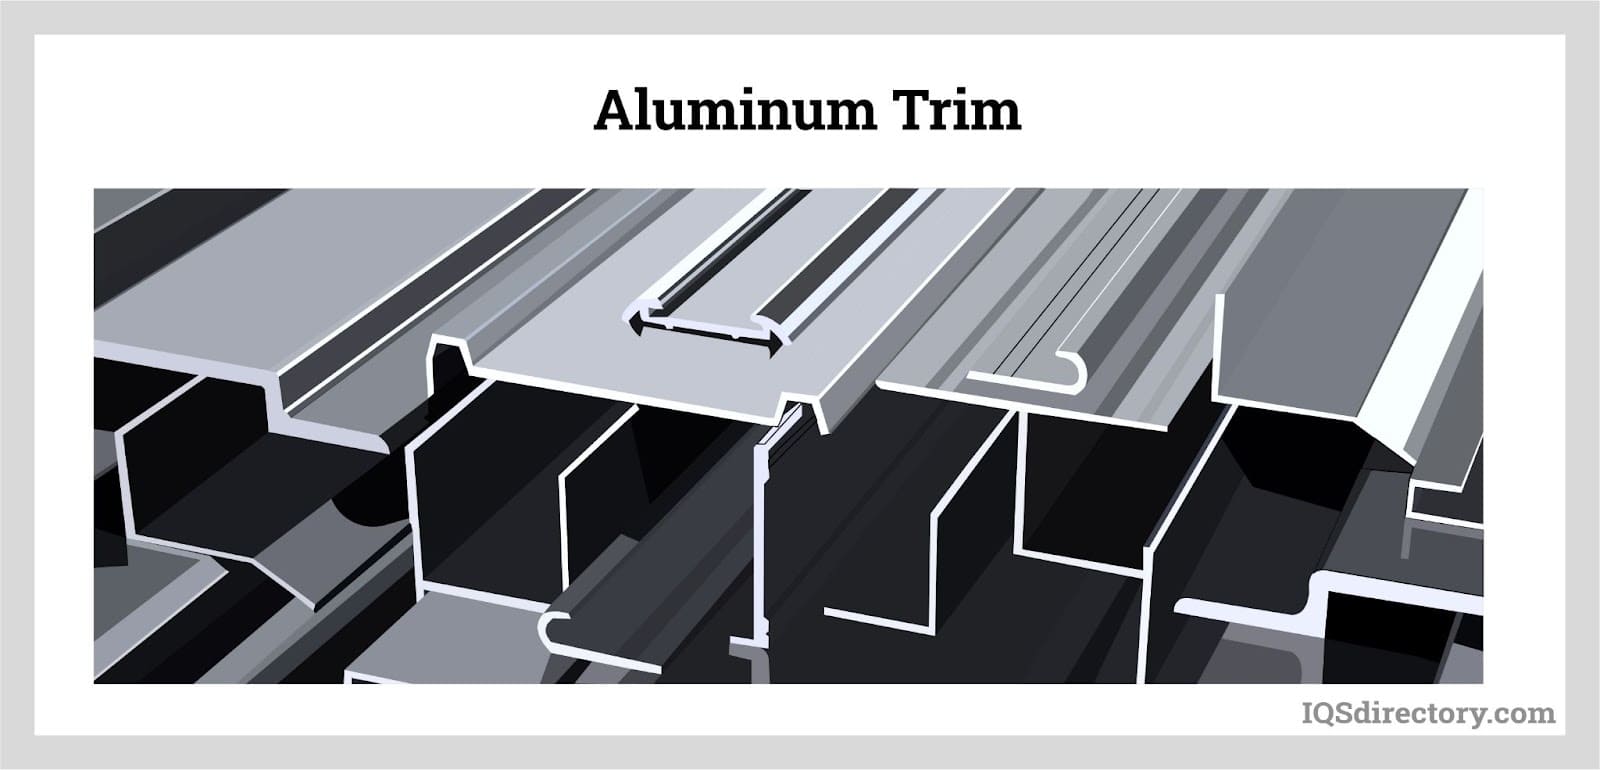 Aluminum Trim